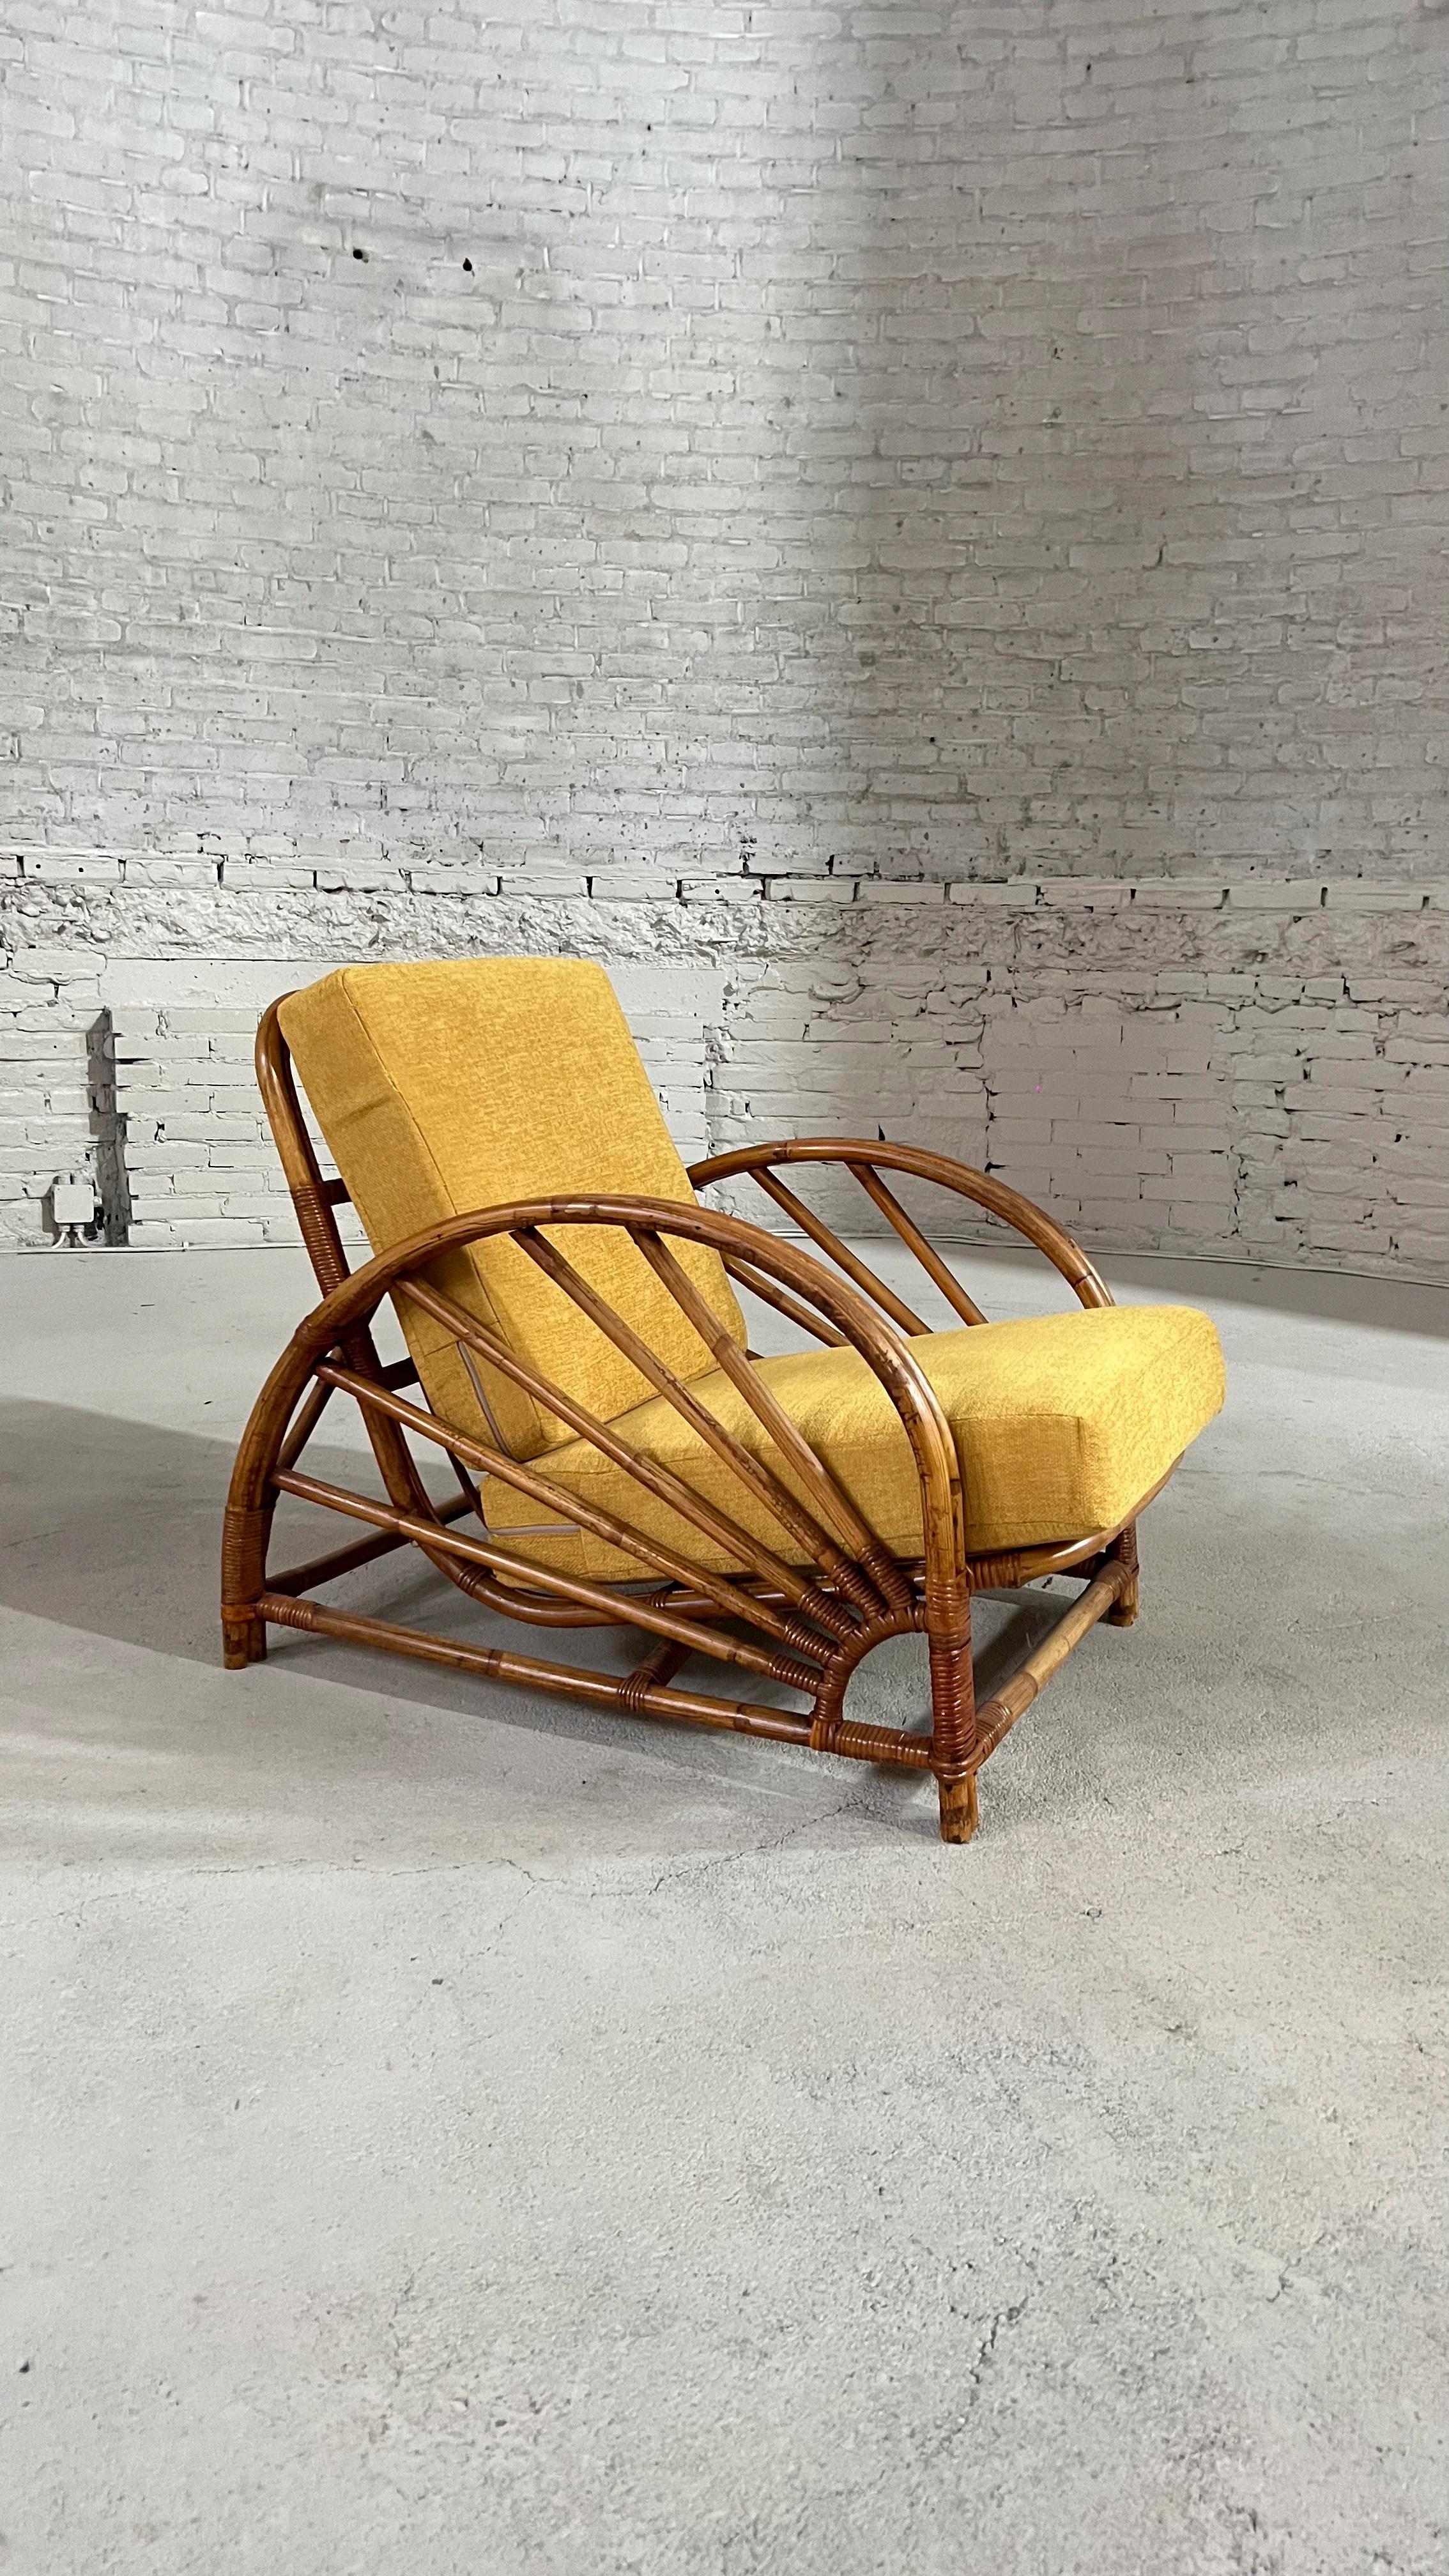 Chaise longue vintage de Paul Franks. Cette chaise en rotin est en parfait état.

Les assises sont revêtues d'un tissu couleur curry et rendent ce canapé estival extrêmement confortable.